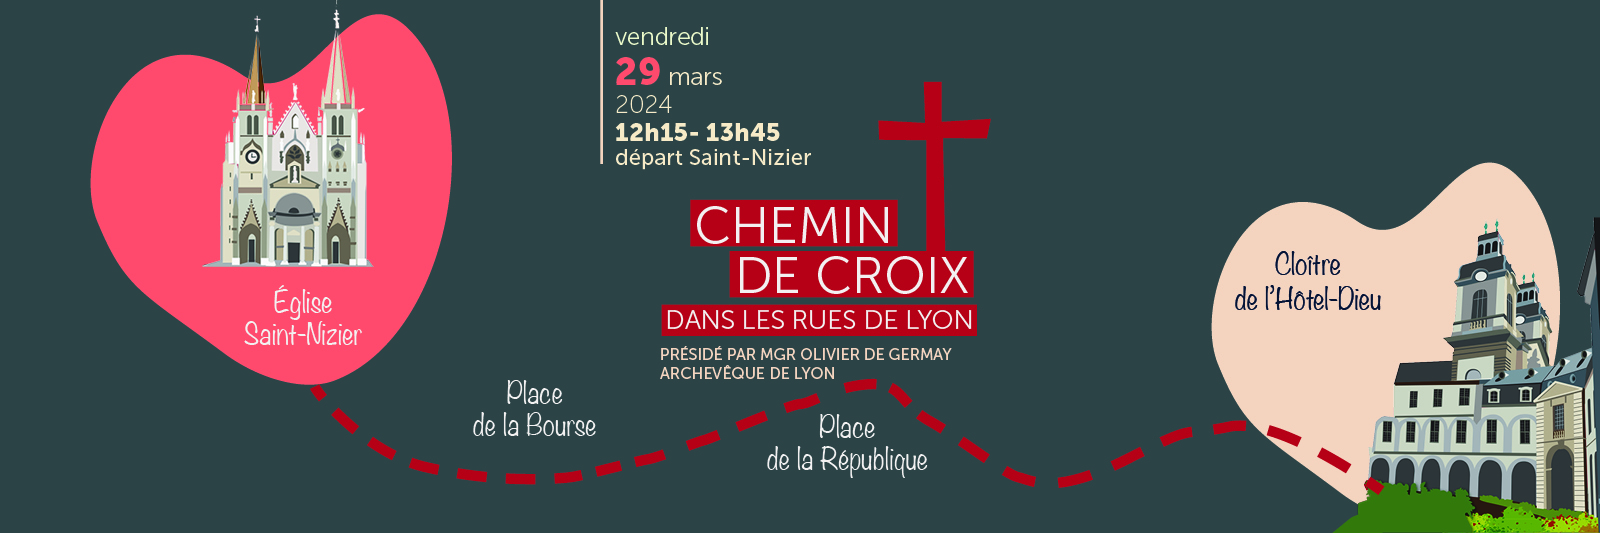 Chemin de croix dans les rues de Lyon